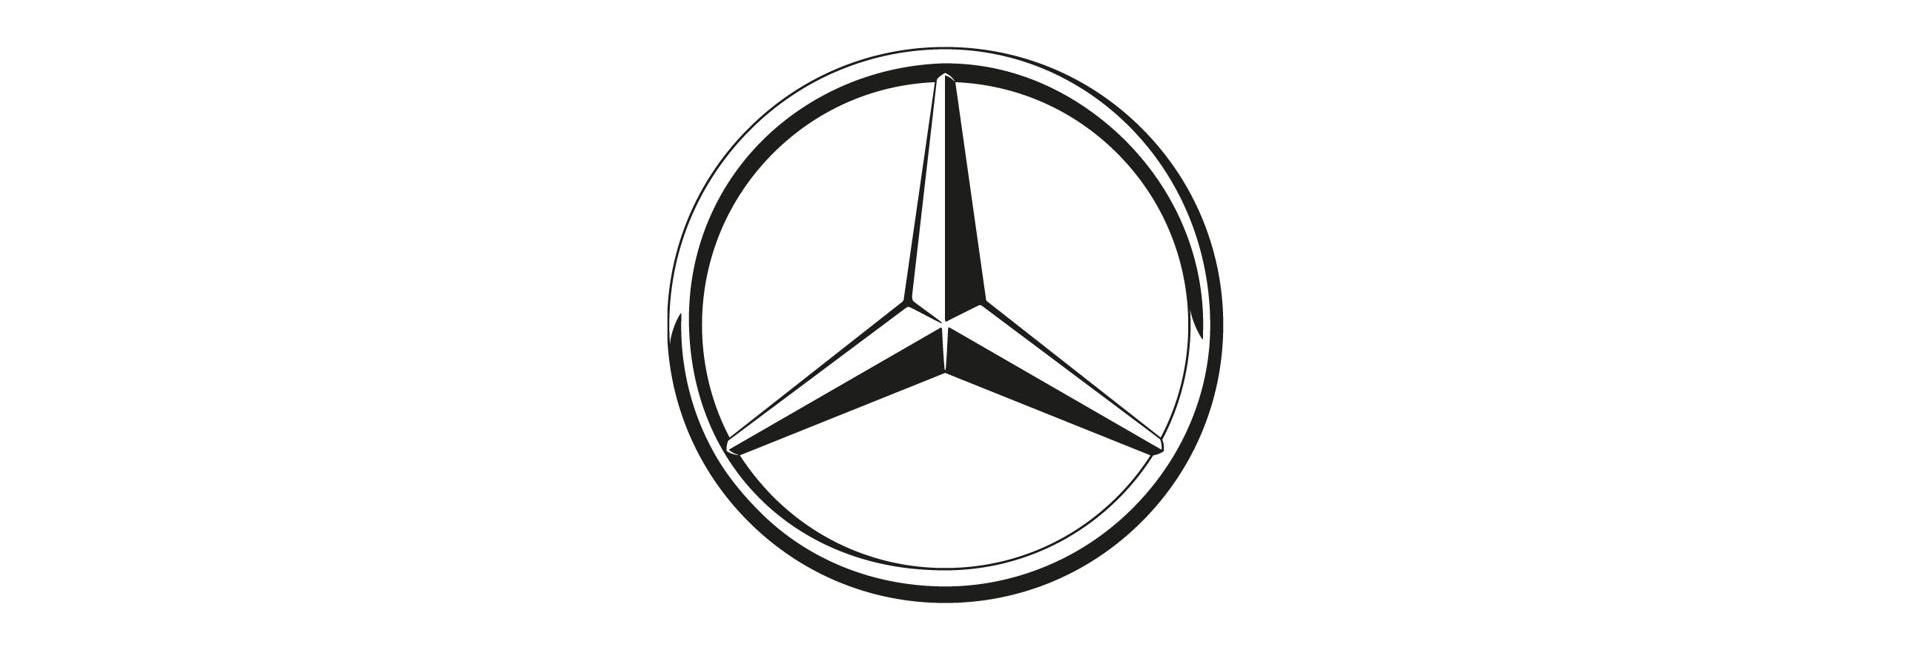 Új korszak kezdődik a kecskeméti Mercedes-Benz gyárban - VIDEÓRIPORT